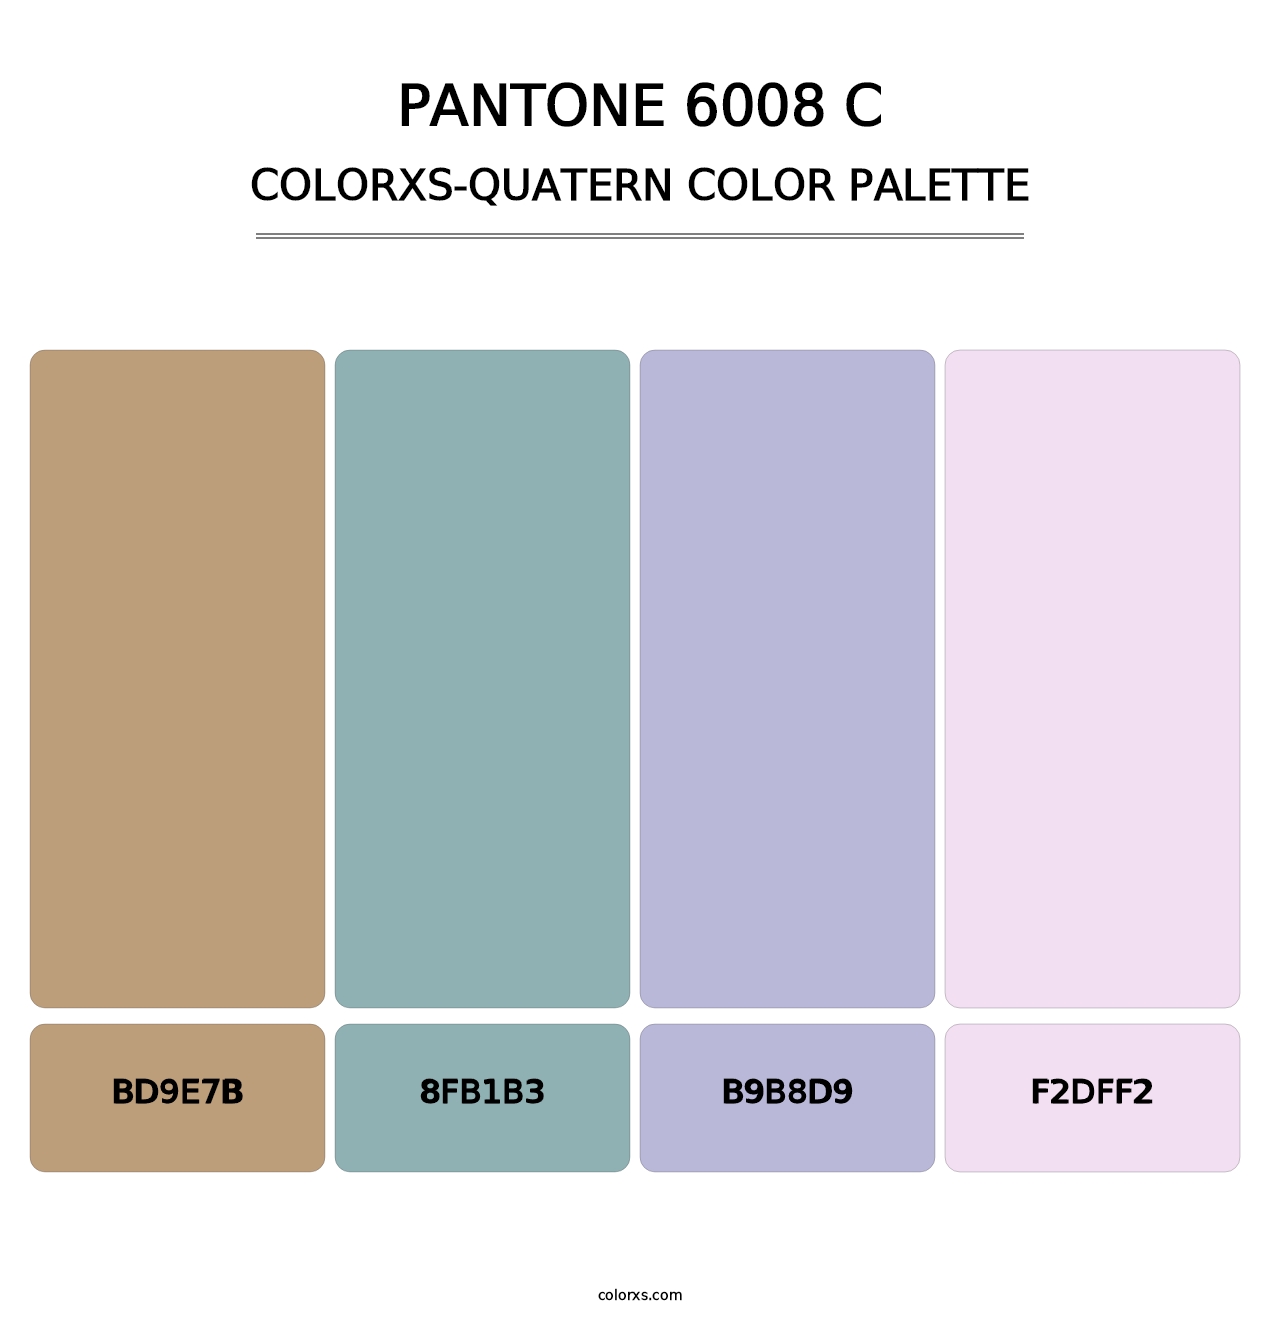 PANTONE 6008 C - Colorxs Quatern Palette